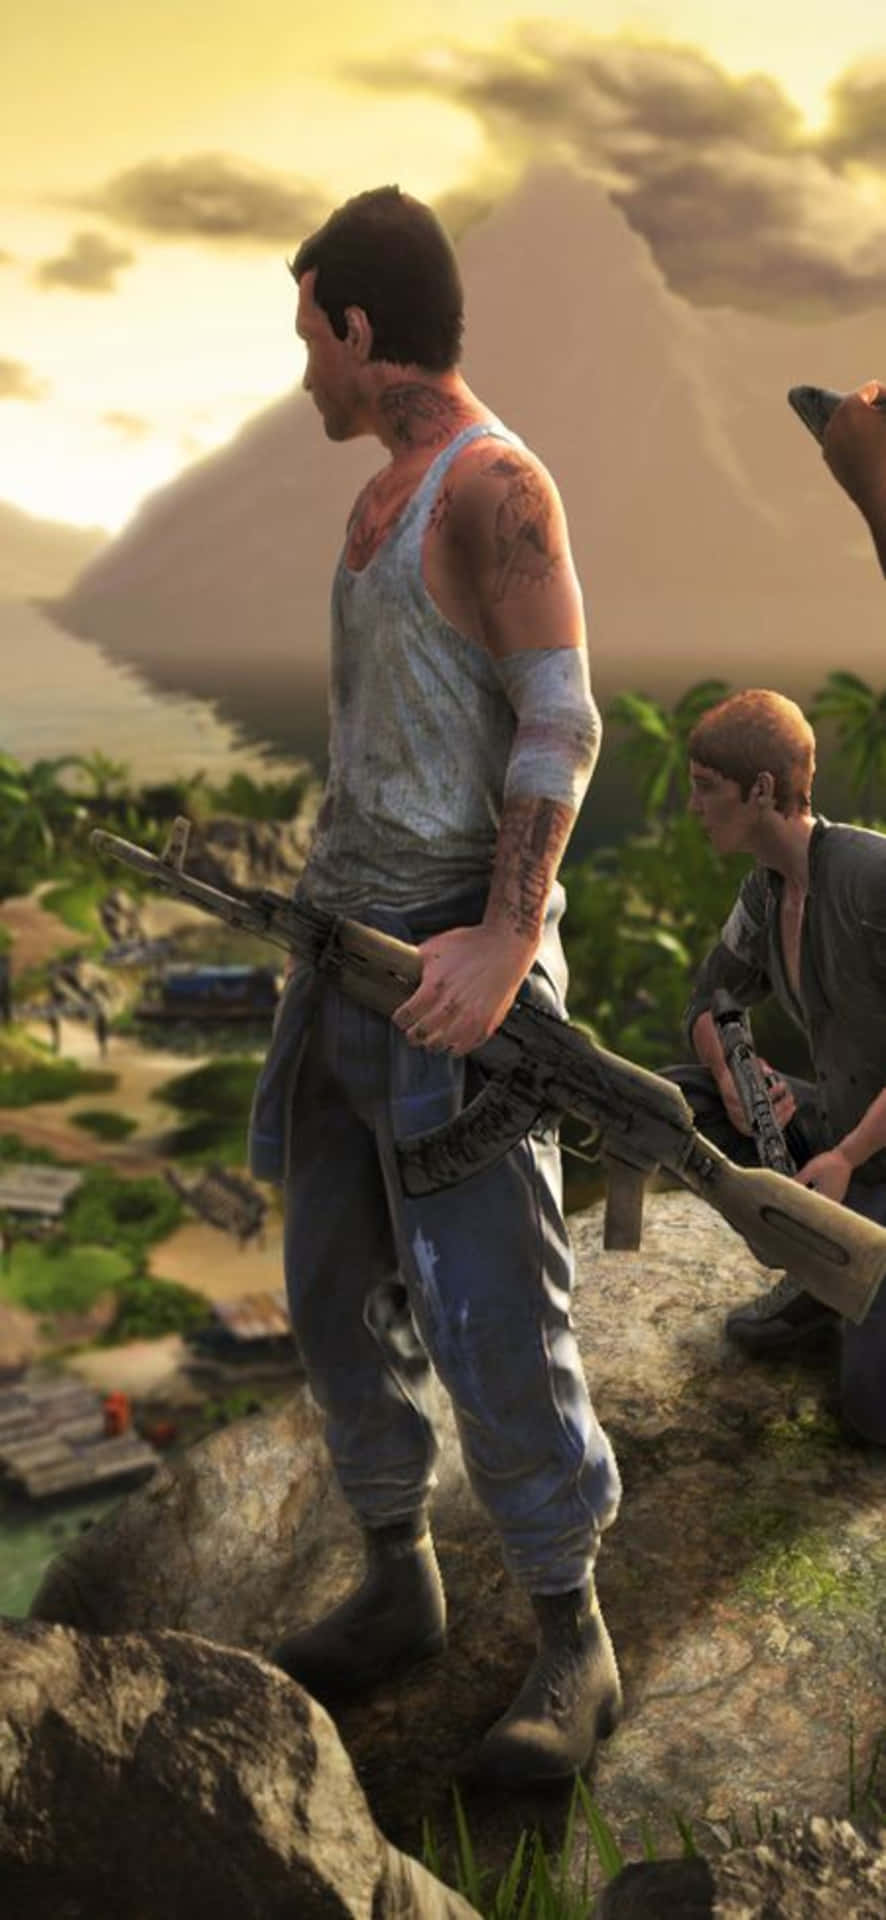 Iphonex Bakgrund Med En Nedslagen Karaktär Från Far Cry 3.